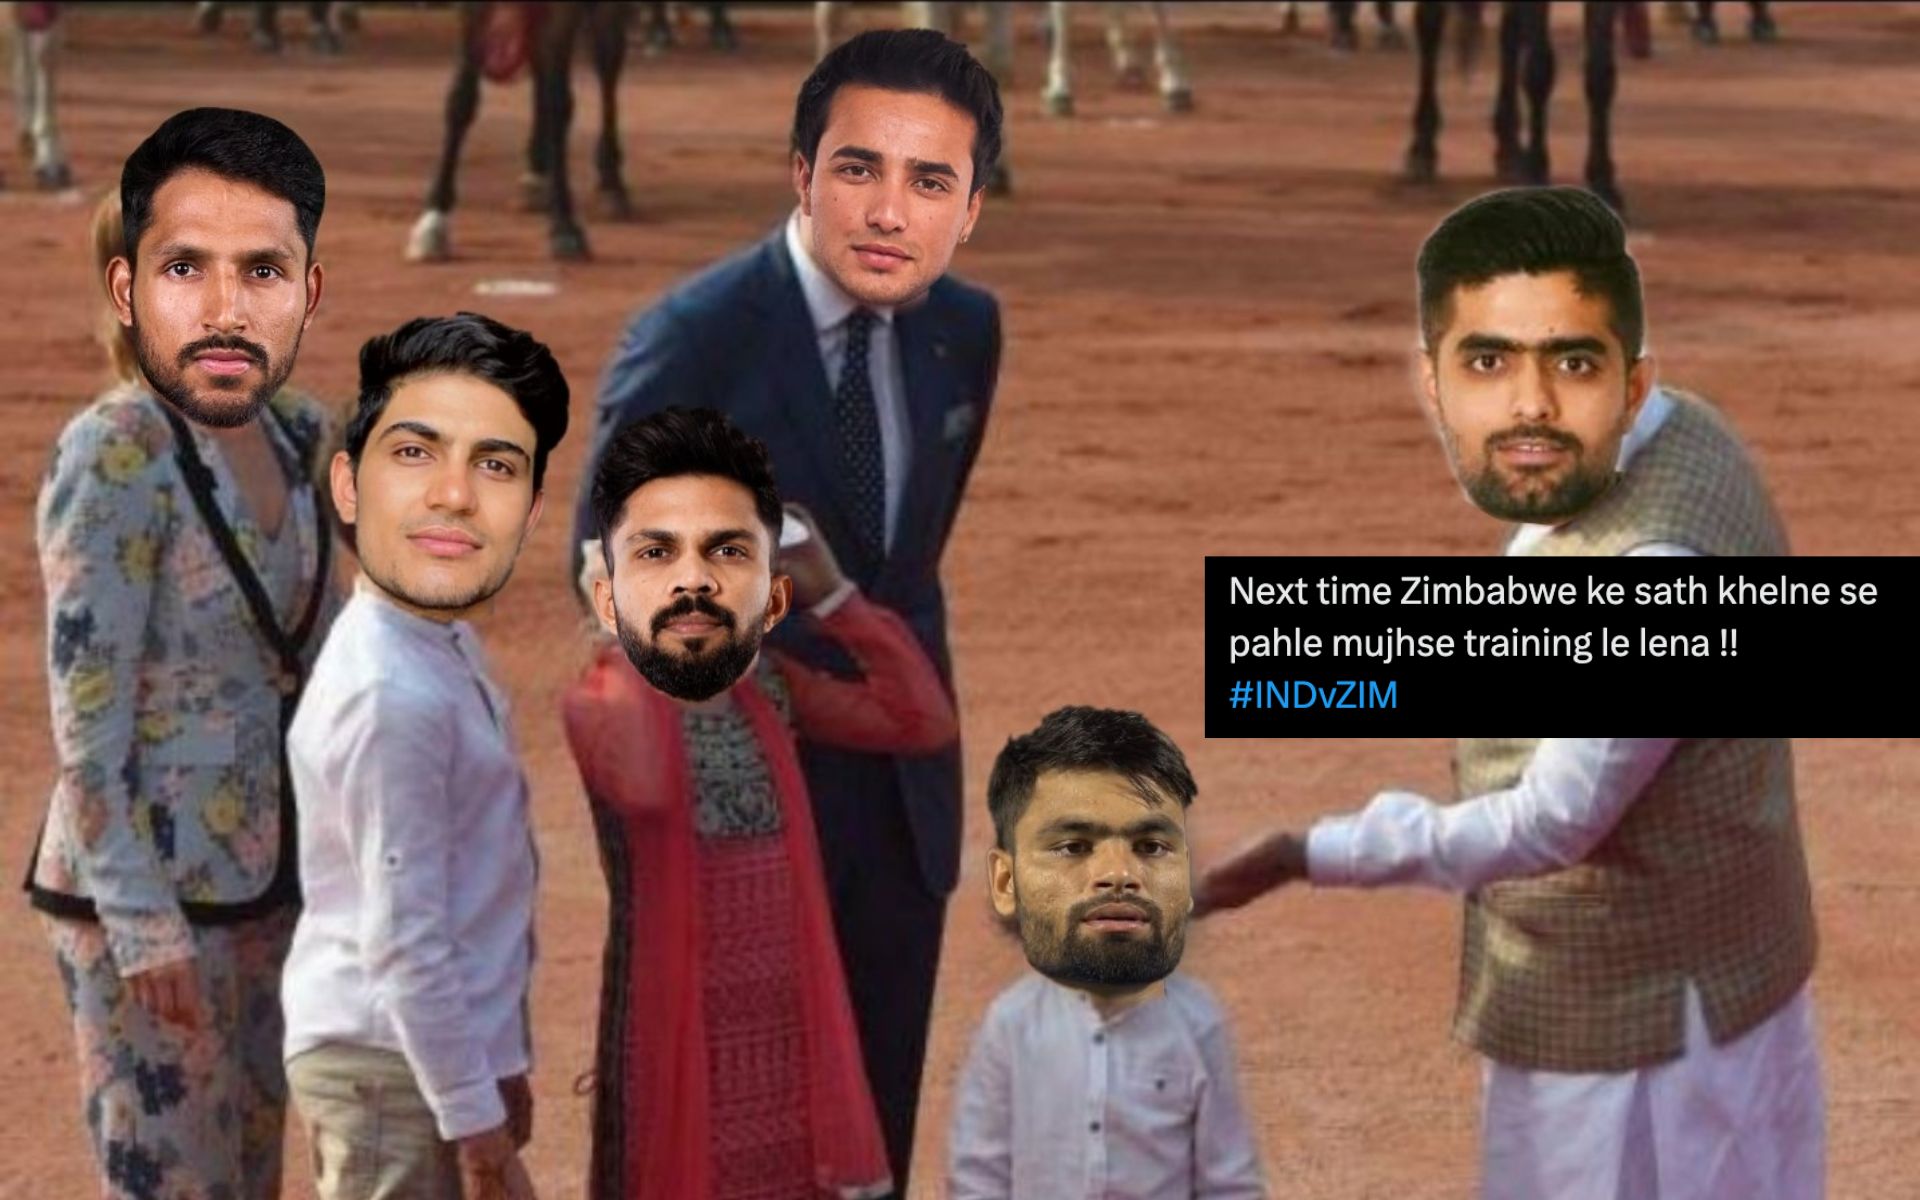 'IPL टैलेंट एक्सपोज़': अनुभवहीन टीम इंडिया की ज़िम्बाब्वे से चौंकाने वाली हार पर फ़ैन्स हुए नाराज़